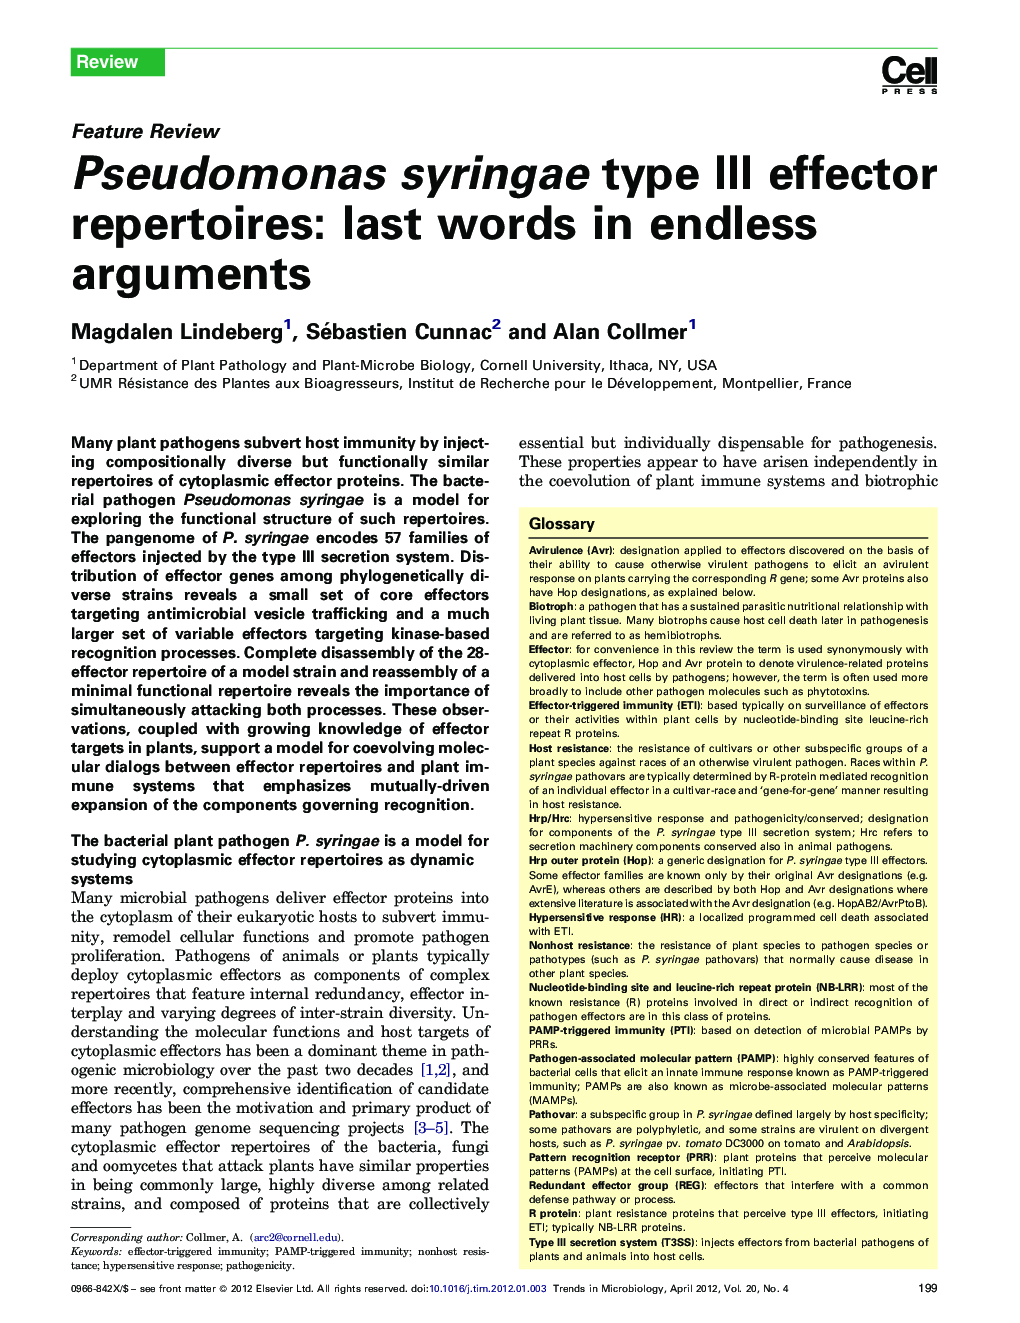 Pseudomonas syringae type III effector repertoires: last words in endless arguments